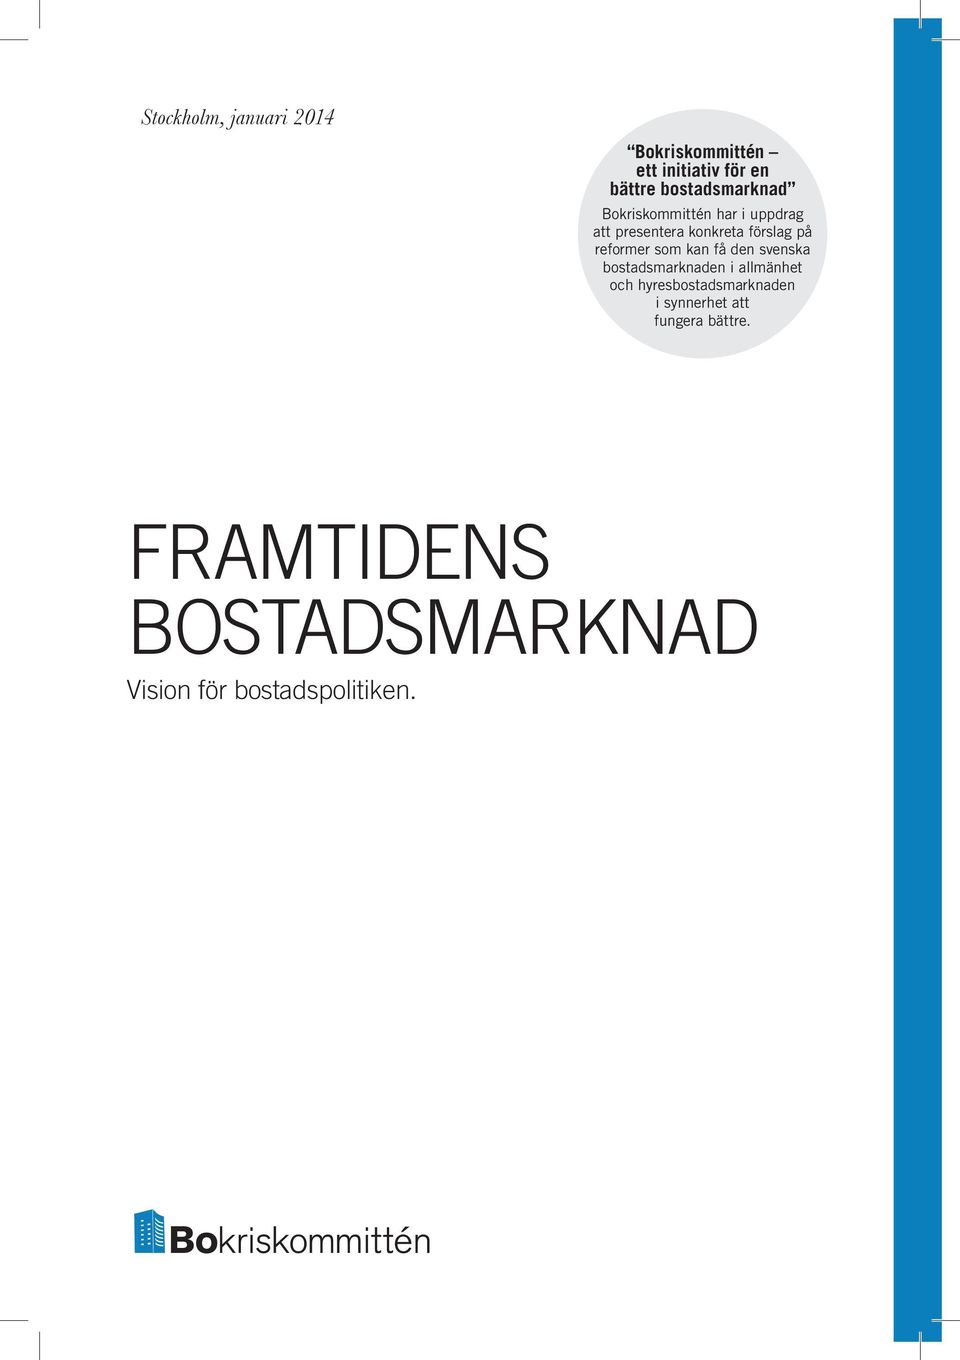 reformer som kan få den svenska bostadsmarknaden i allmänhet och